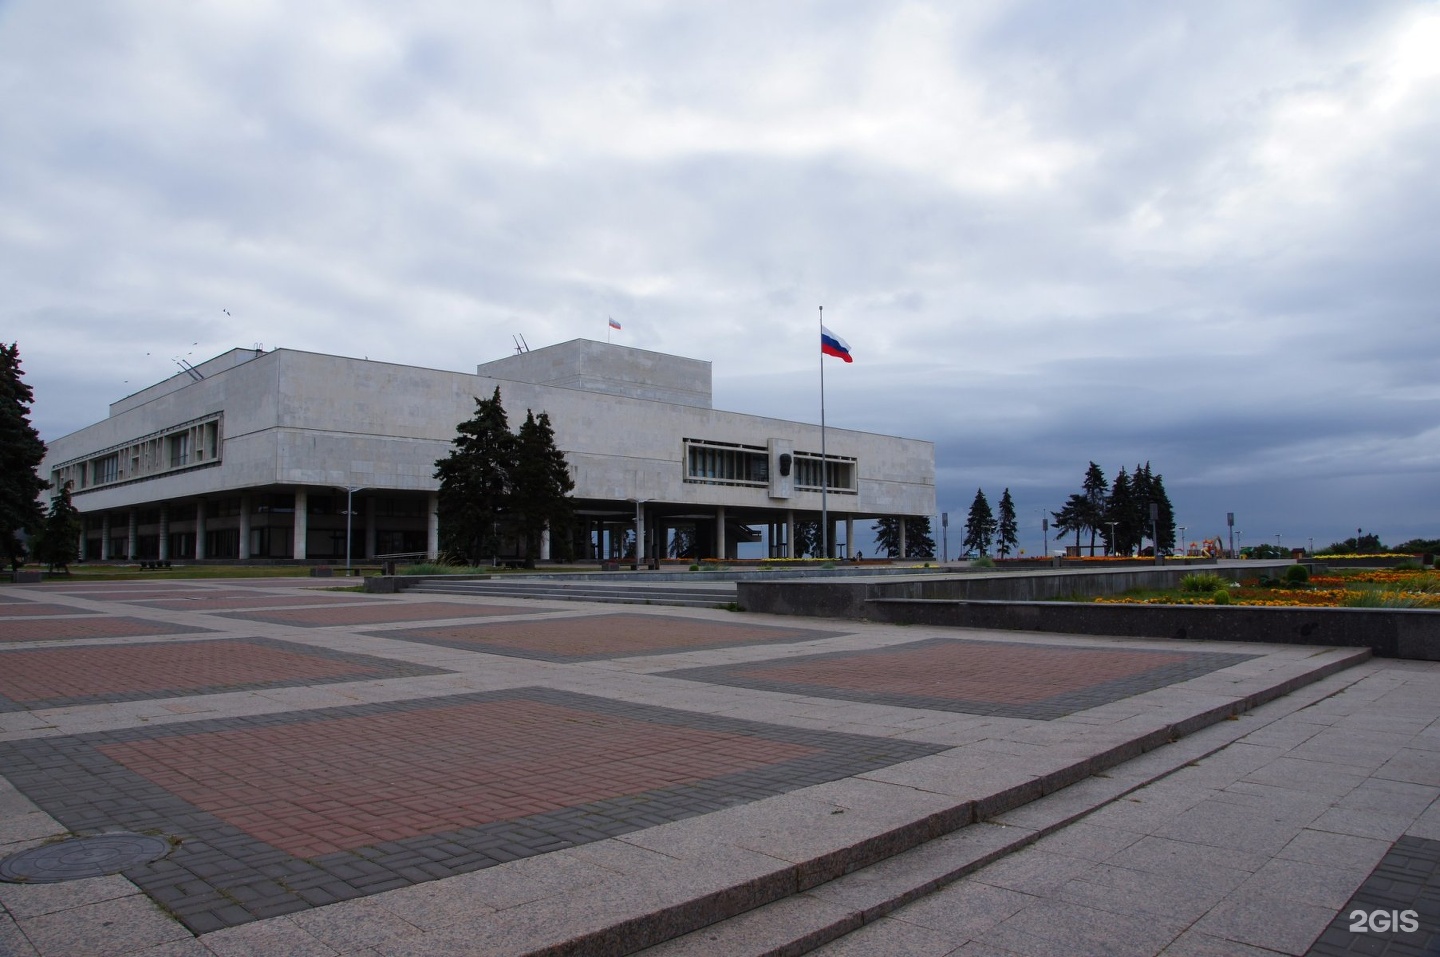 Площадь ленина ульяновск